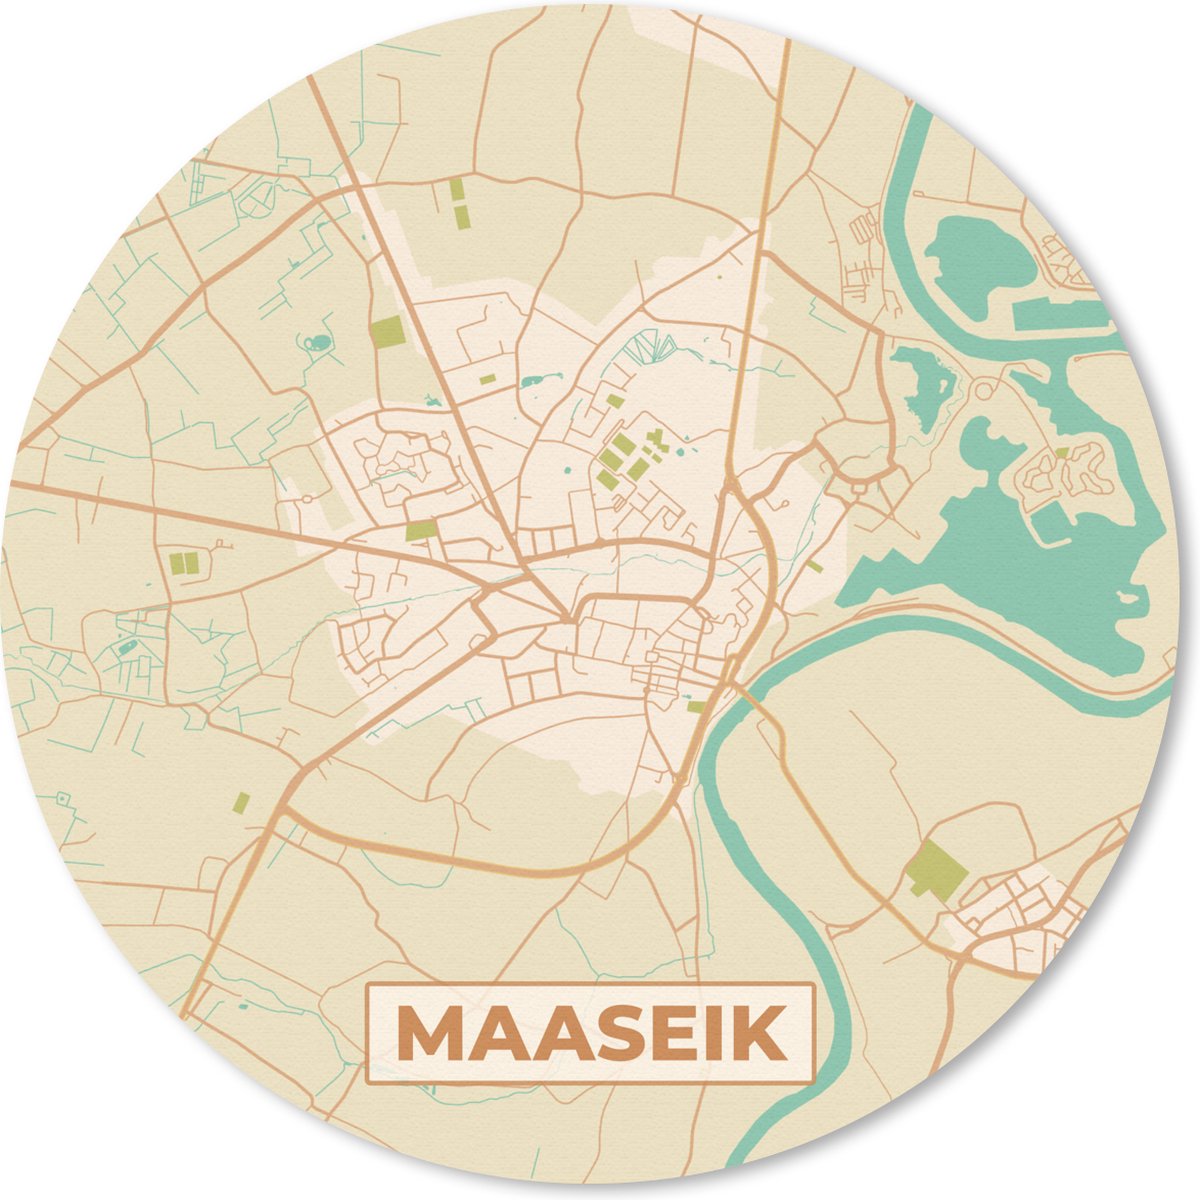 Muismat - Mousepad - Rond - Plattegrond - Kaart - Stadskaart - Maaseik - België - 40x40 cm - Ronde muismat